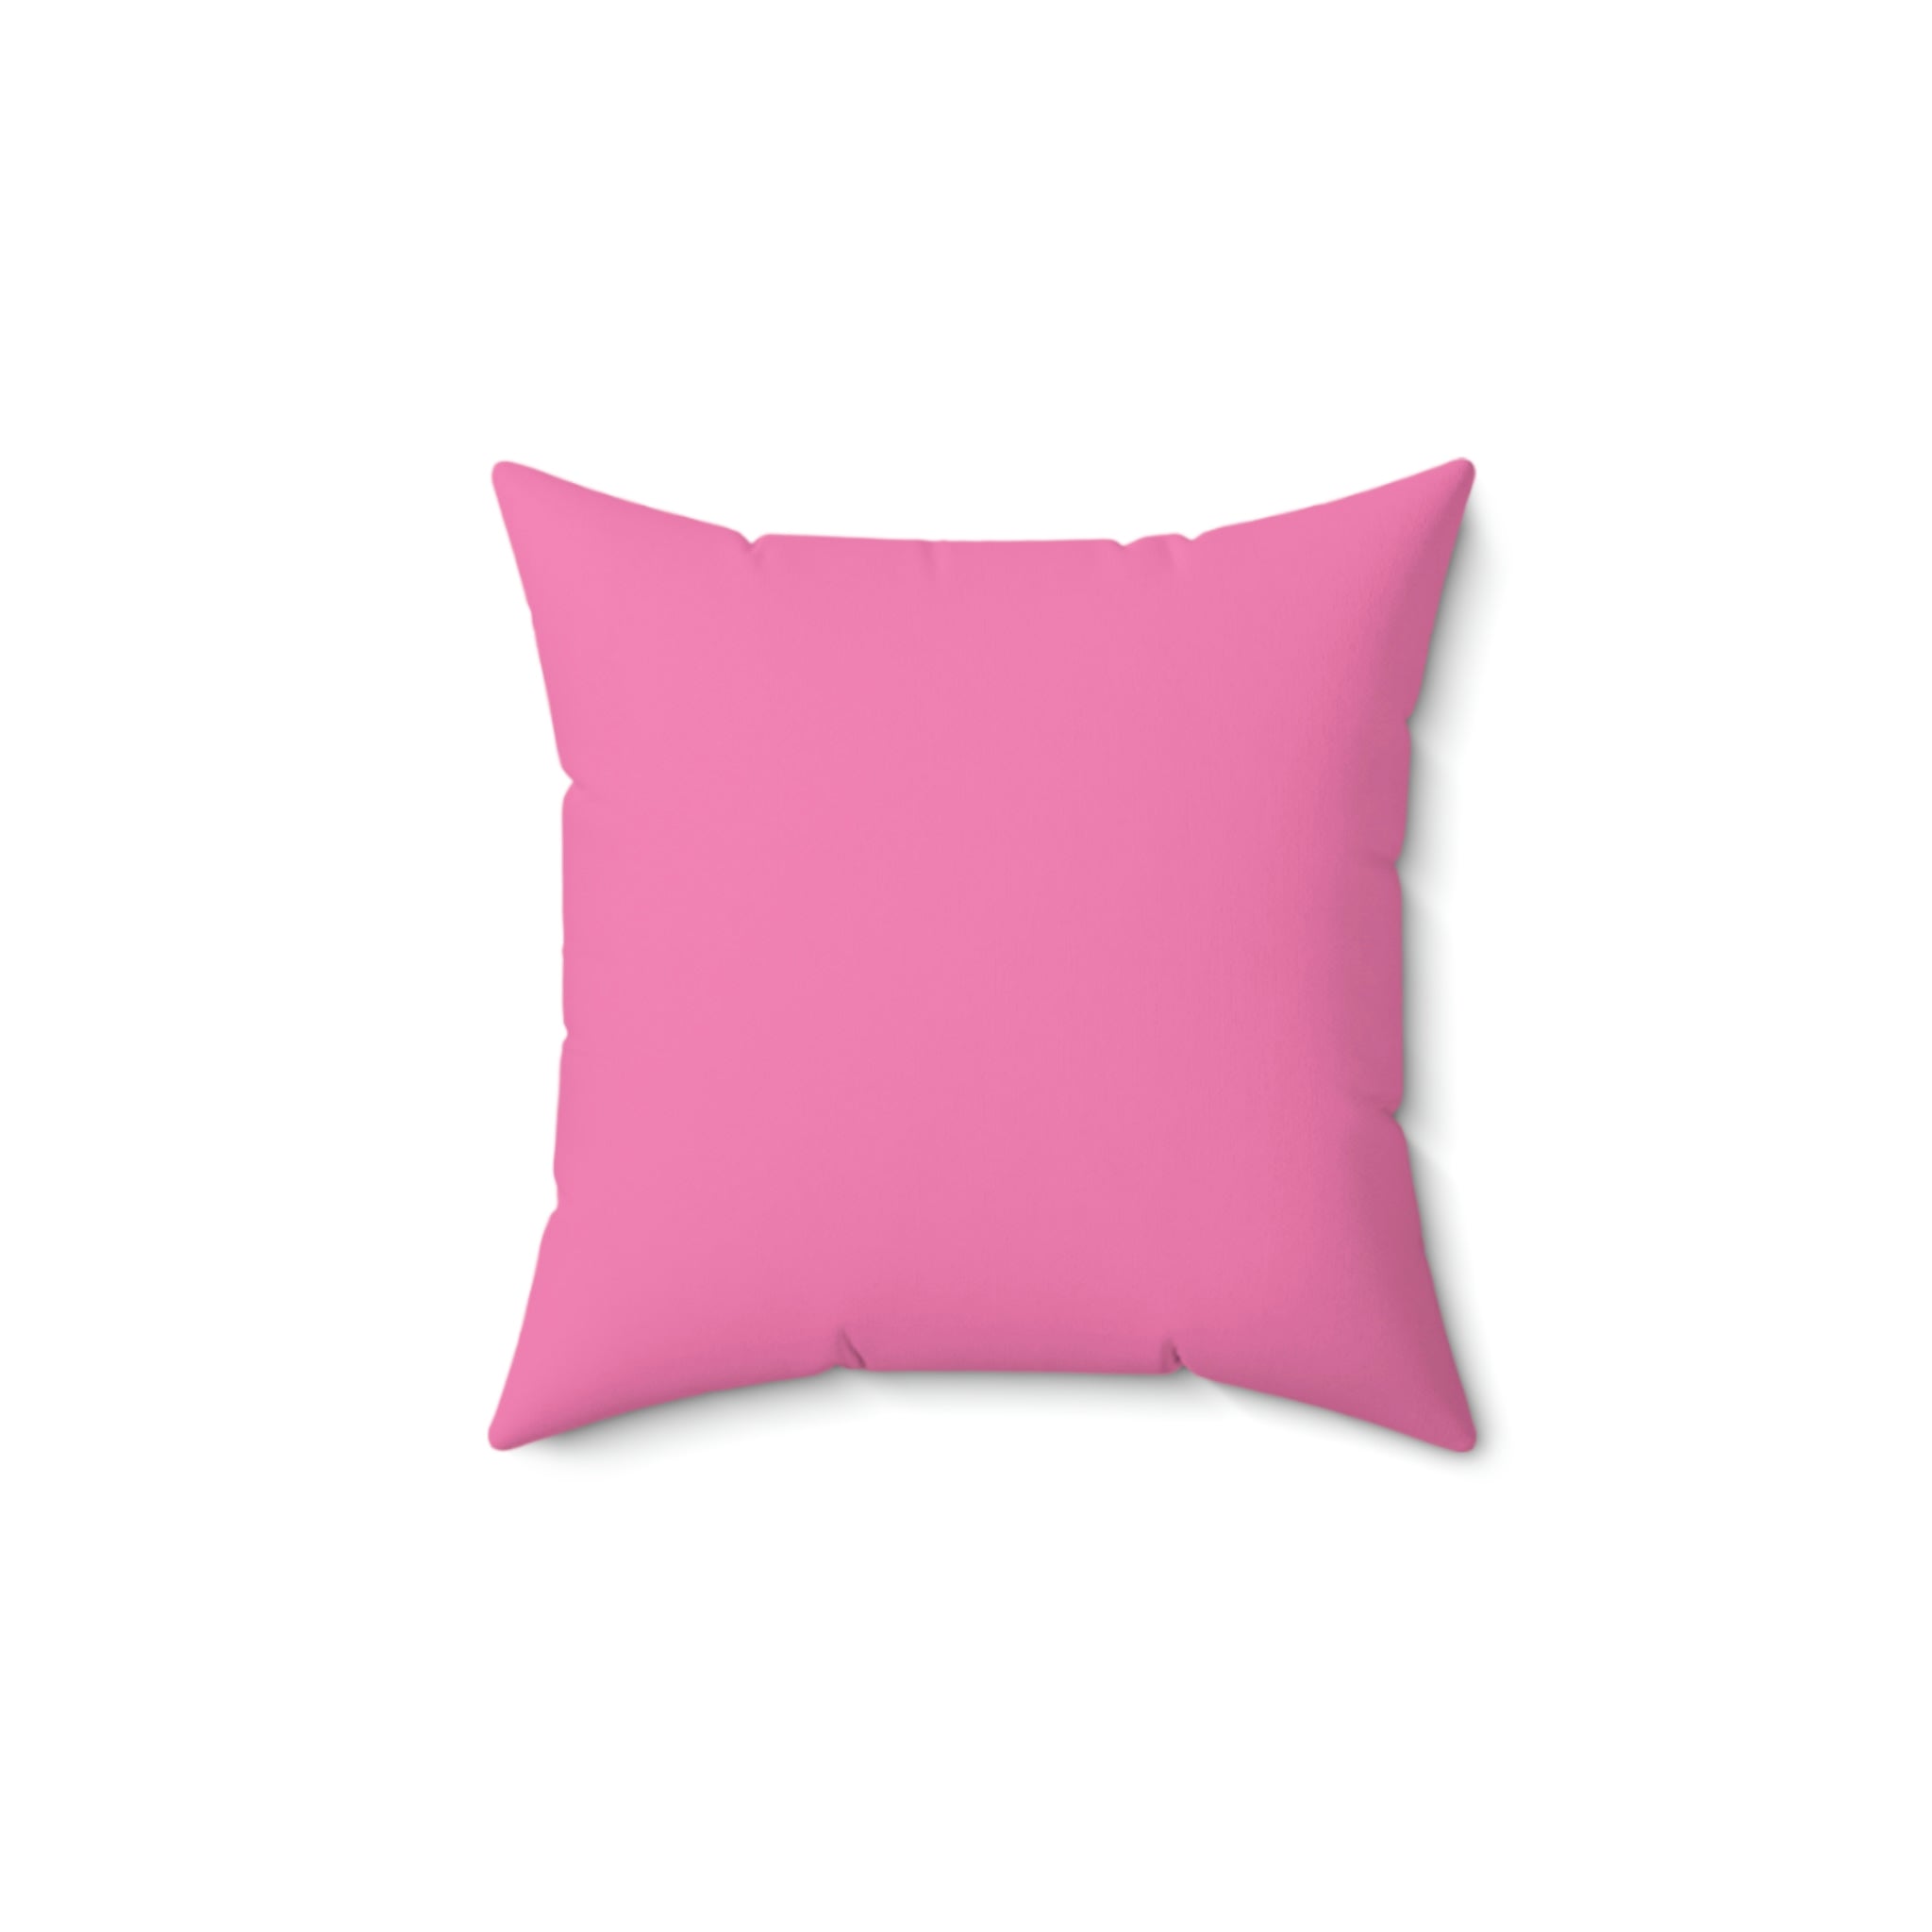 Spun Polyester Pillow Jack pink